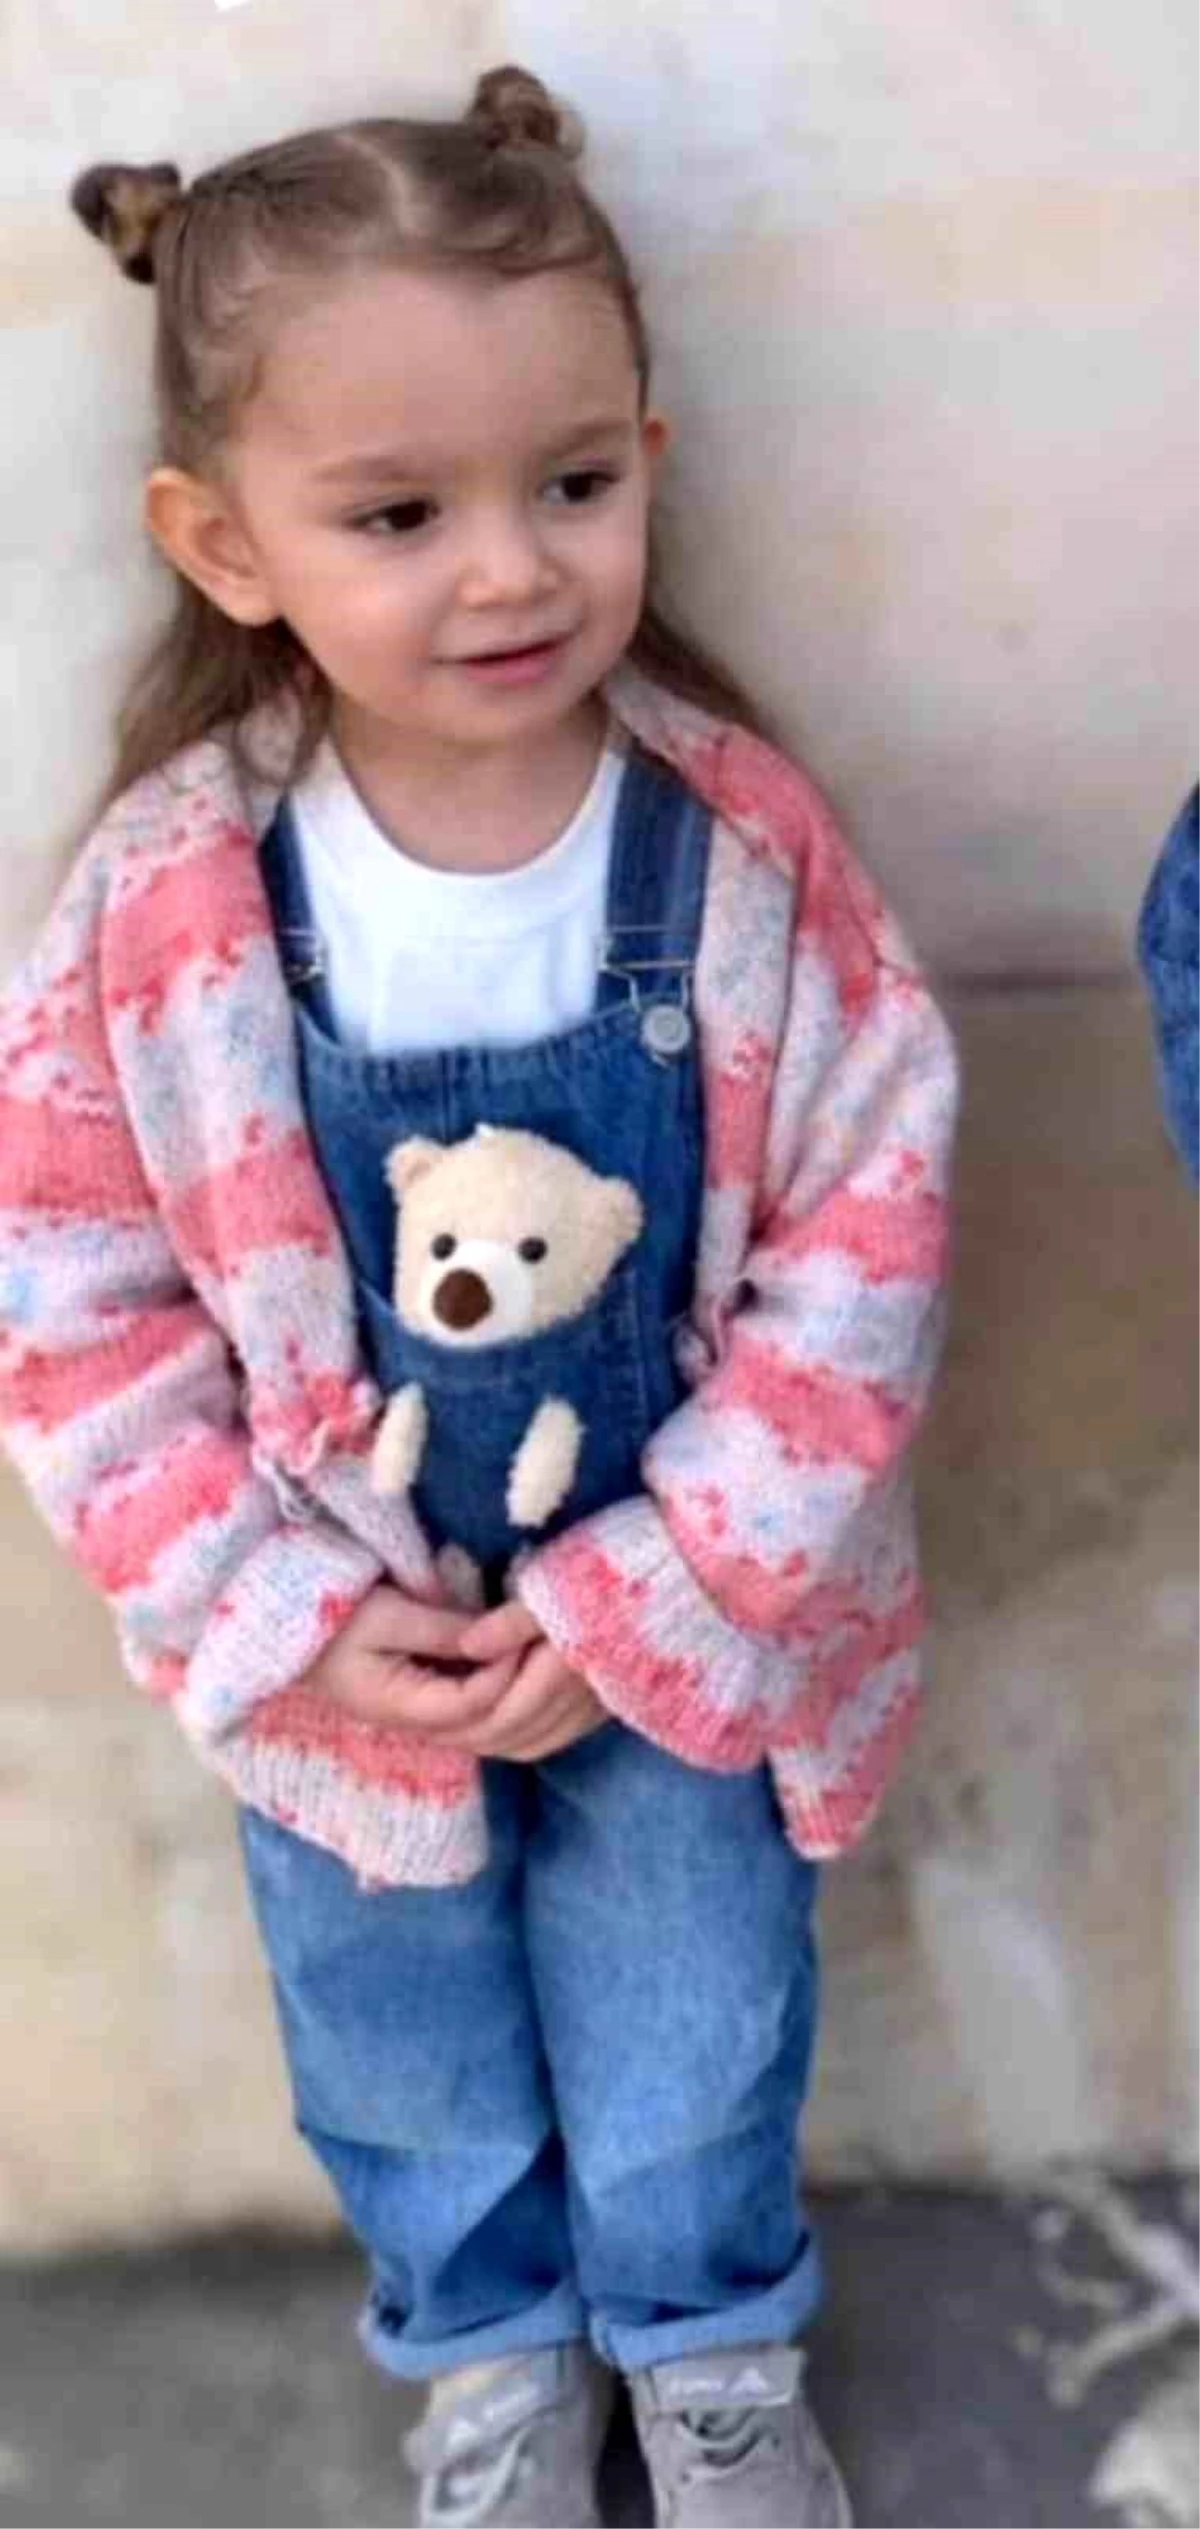 Mardin'de 4 yaşındaki çocuk balkondan düşerek hayatını kaybetti